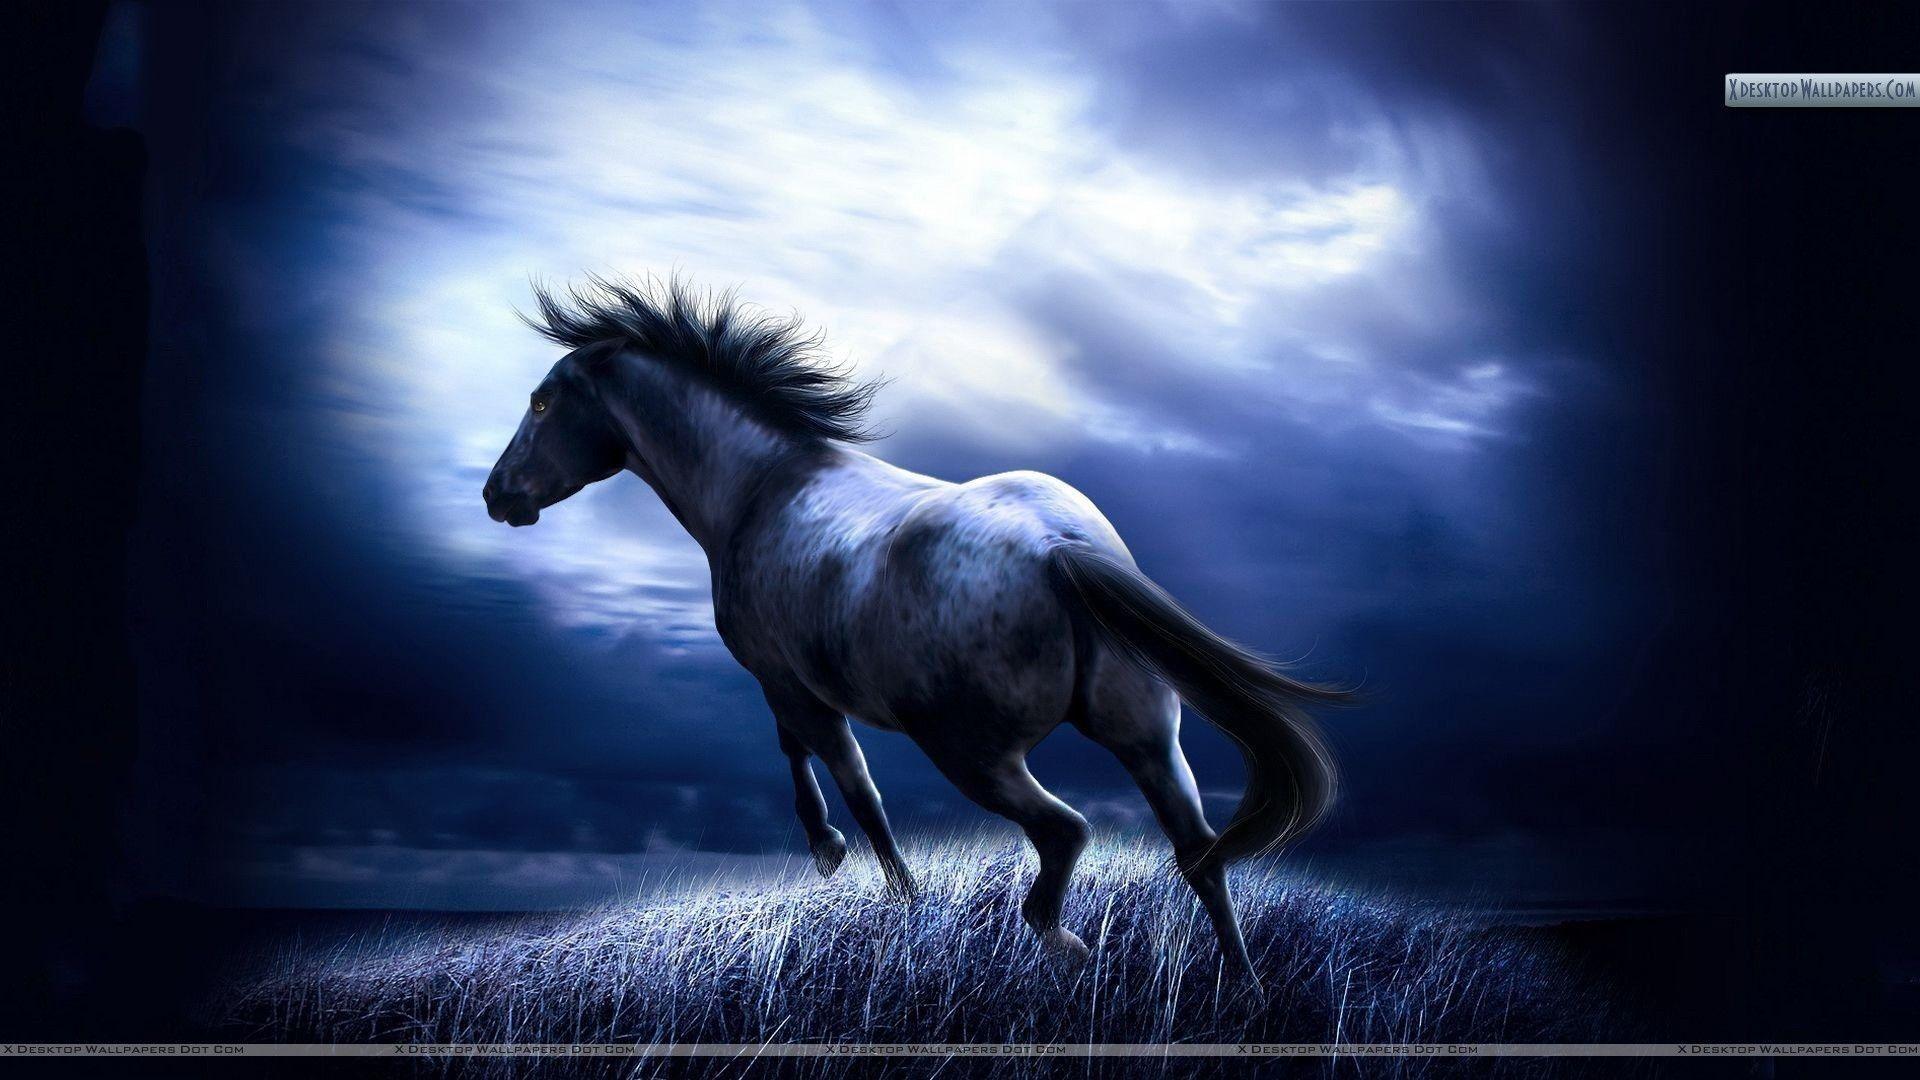 Cảm nhận vẻ đẹp tuyệt vời khi xem hình nền ngựa chạy. Sự nhanh nhẹn, sức mạnh và vẻ đẹp của động vật này sẽ làm cho màn hình điện thoại của bạn nổi bật hơn nhiều.